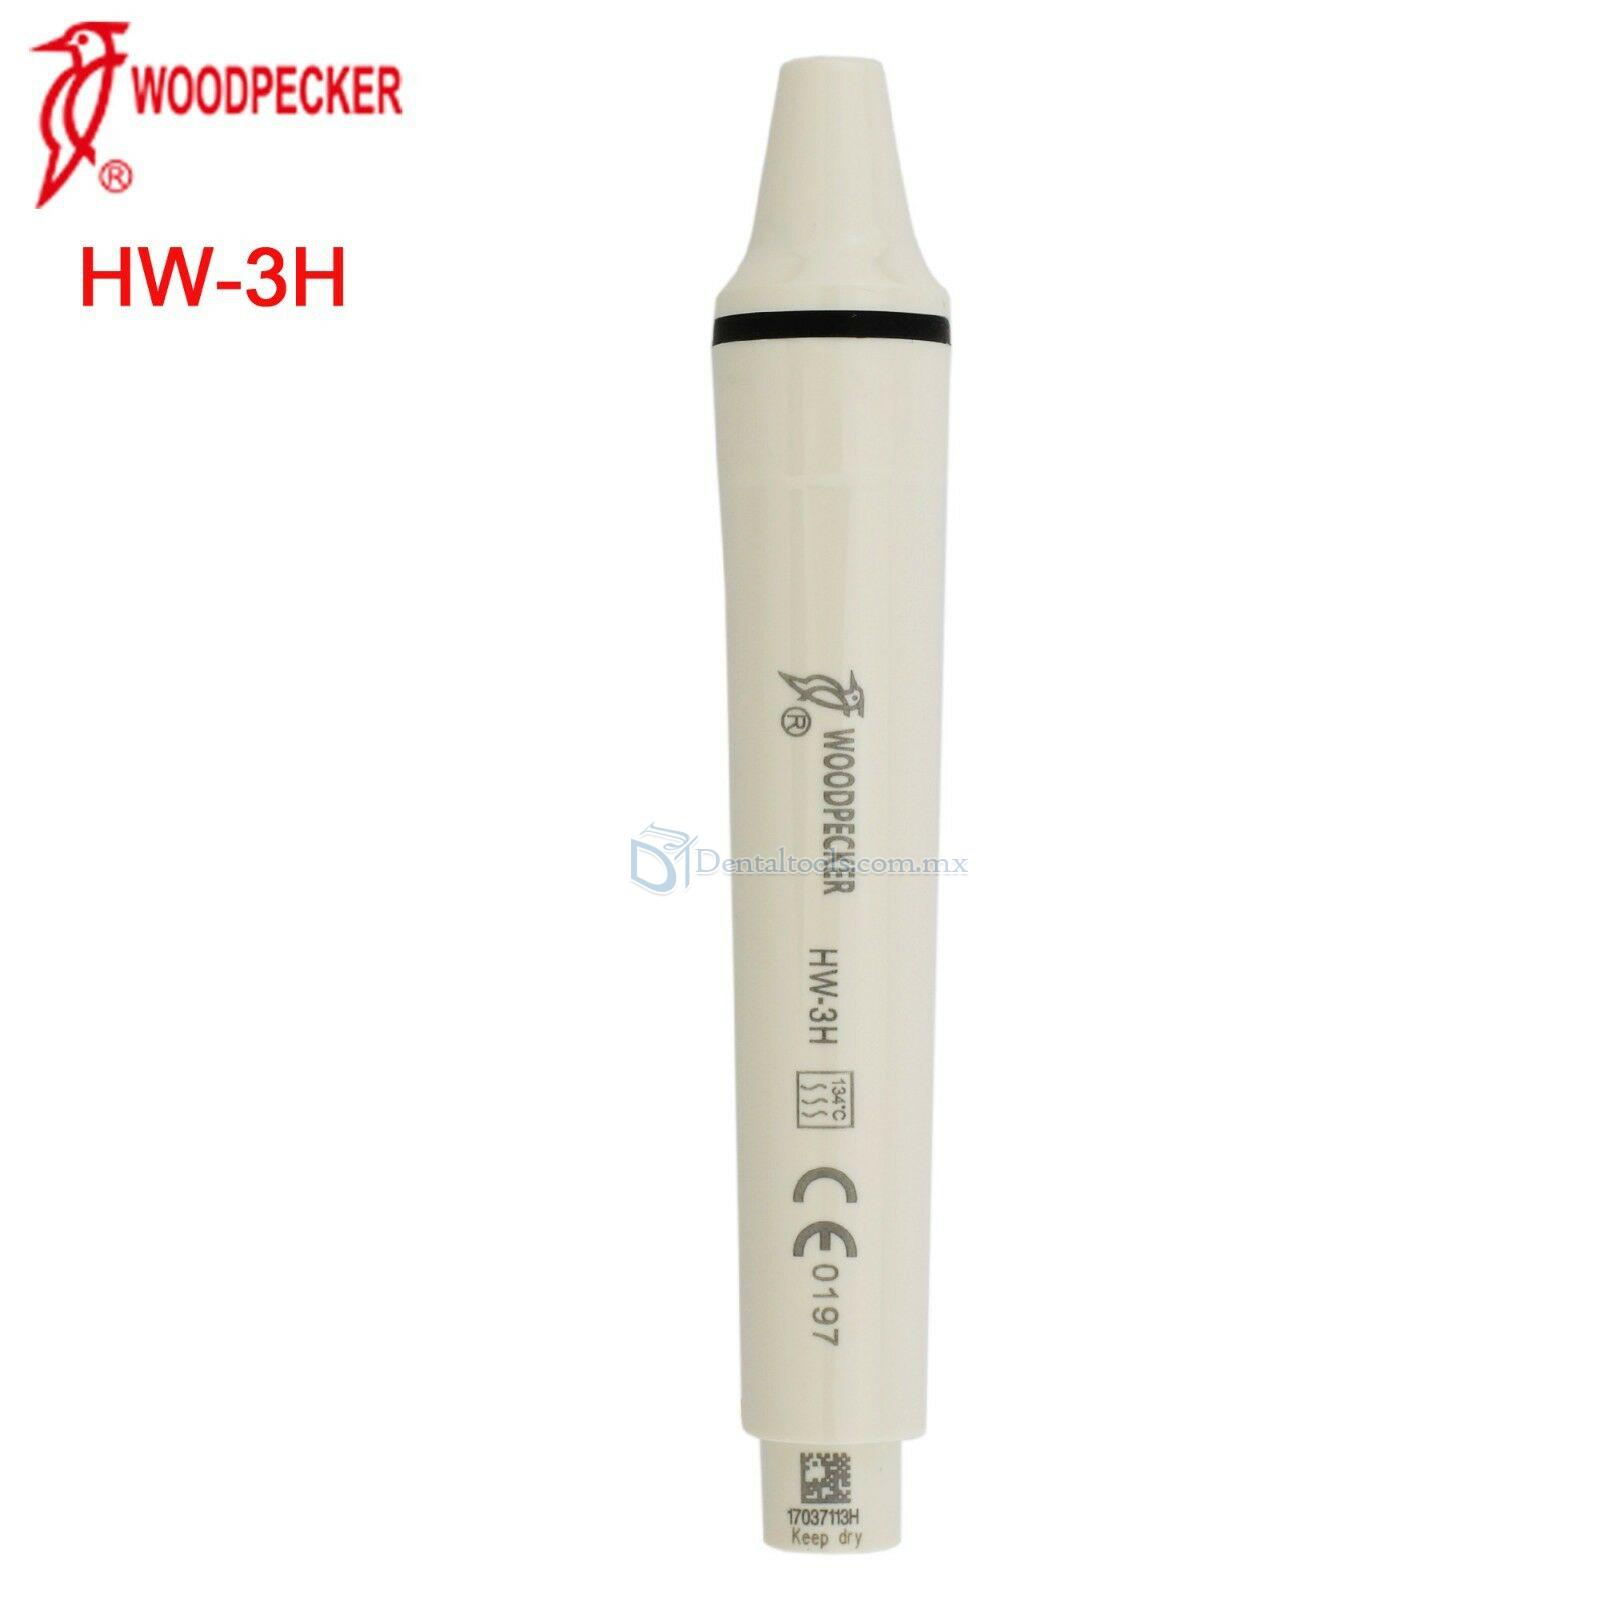 Woodpecker® HW-3H Pieza de Mano Desmontable EMS Compatible